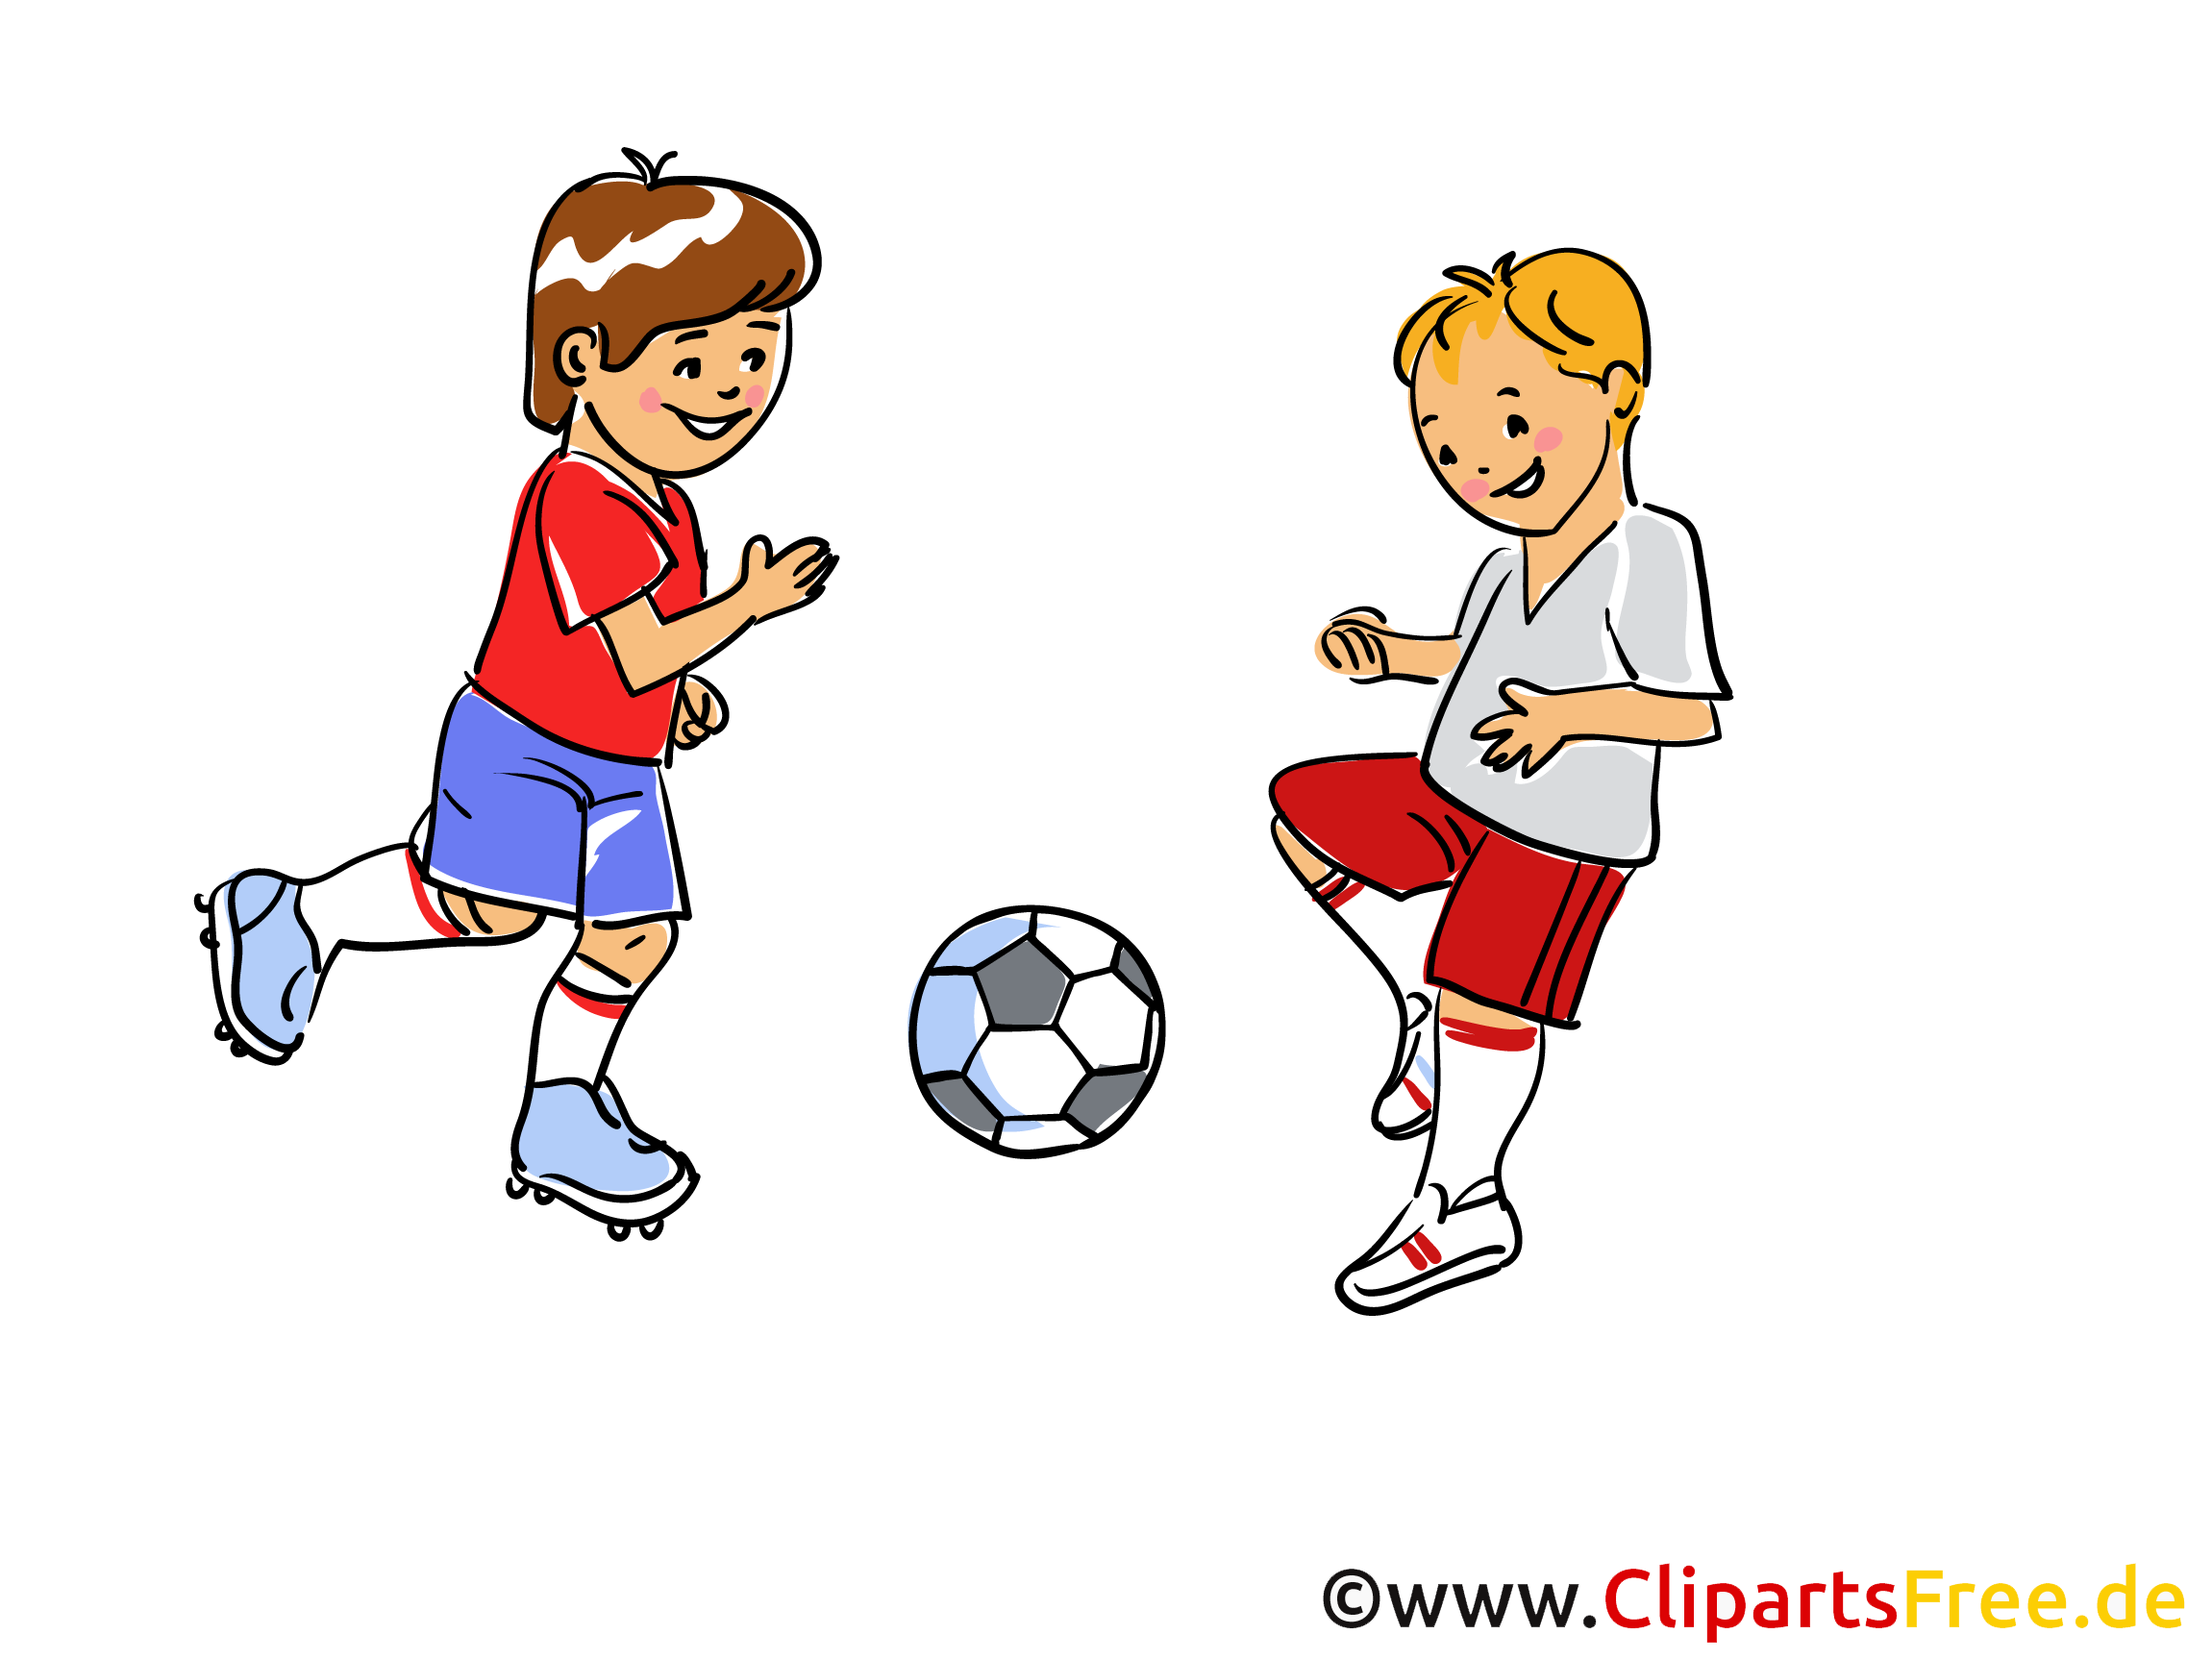 clipart fußball kostenlos download - photo #24